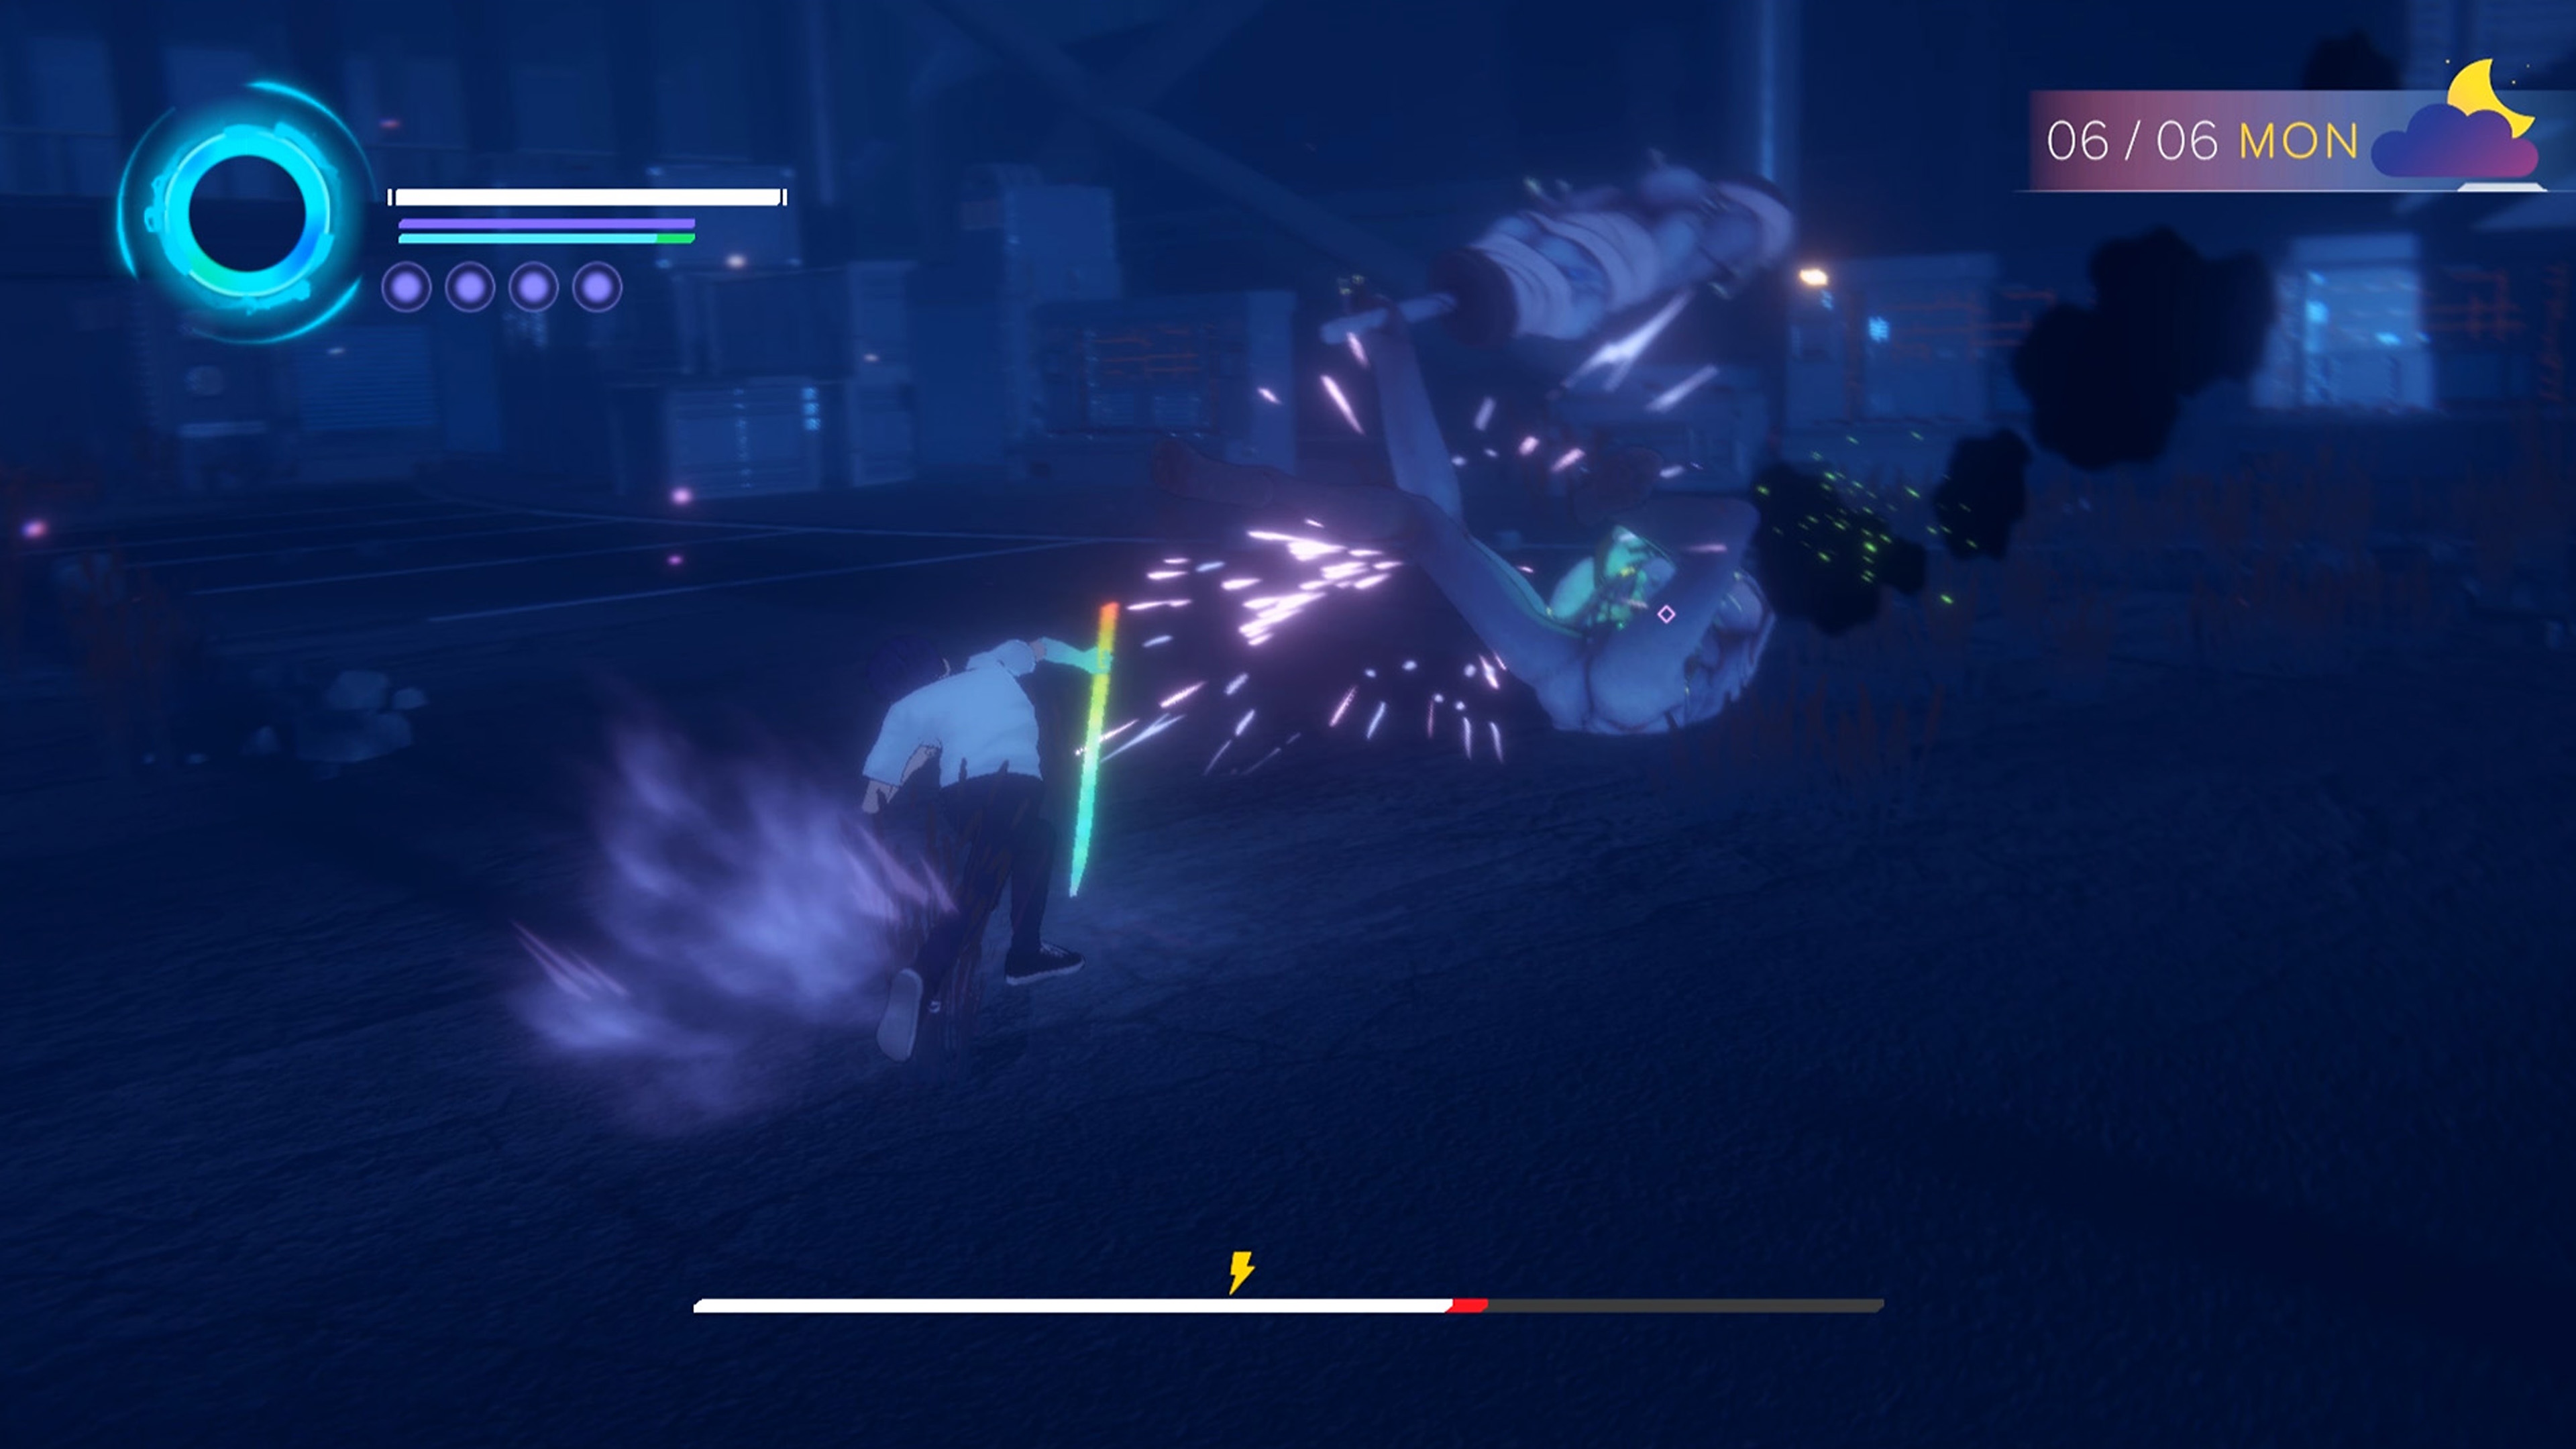 Captura de pantalla de Eternights que muestra a un personaje con edad de secundaria luchando contra una criatura grande, humanoide y demoniaca.